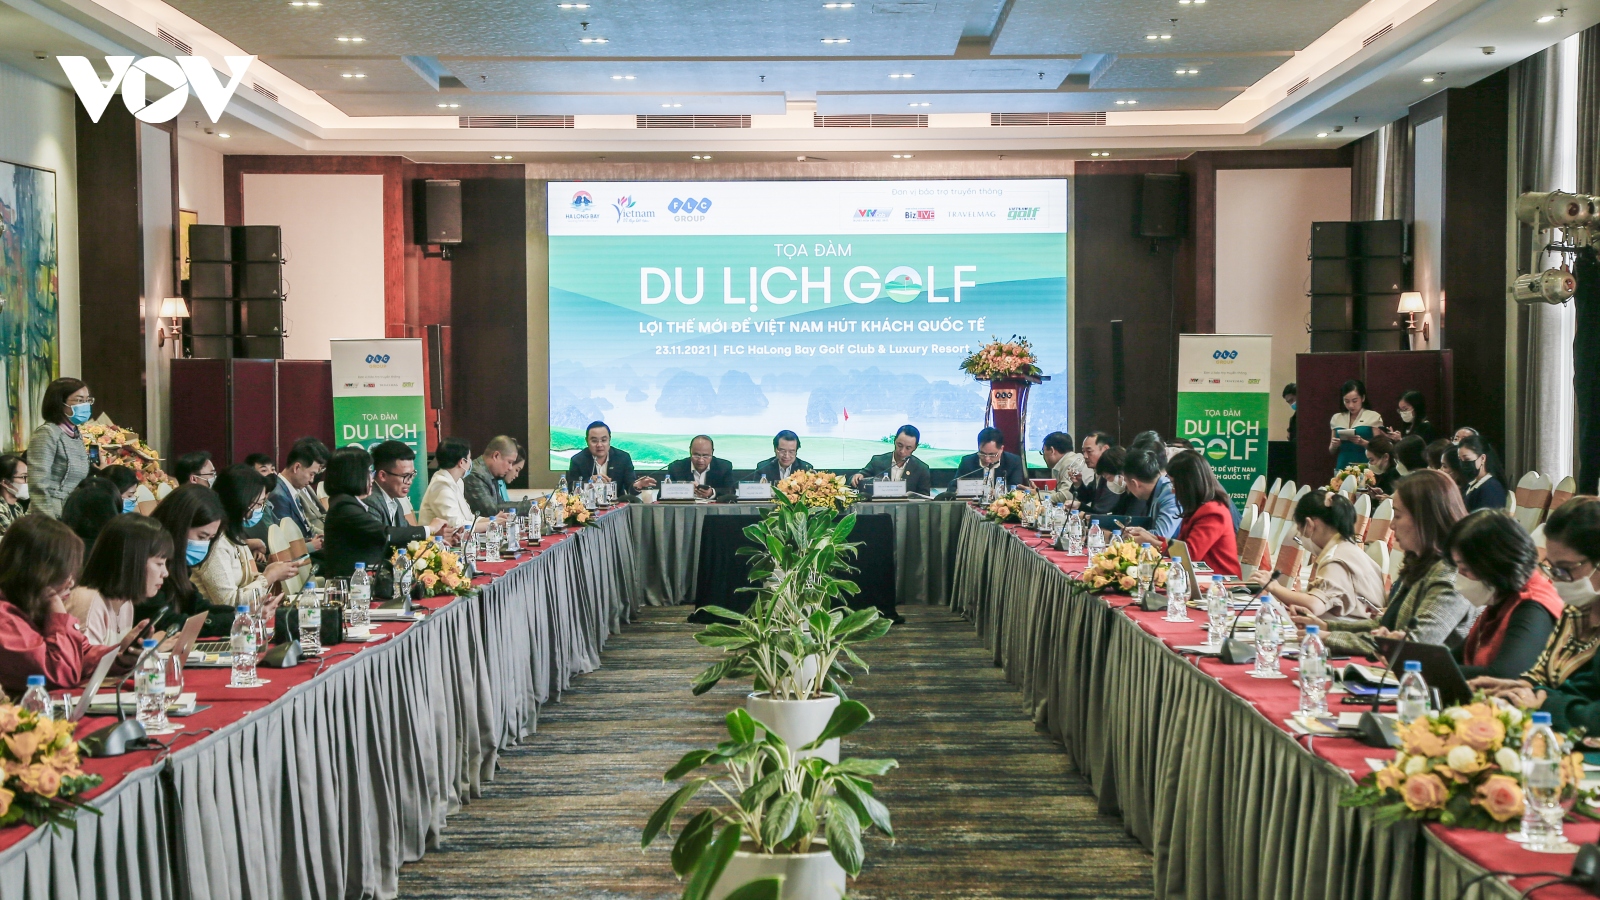 Du lịch golf – "mỏ vàng" để Việt Nam hút khách quốc tế